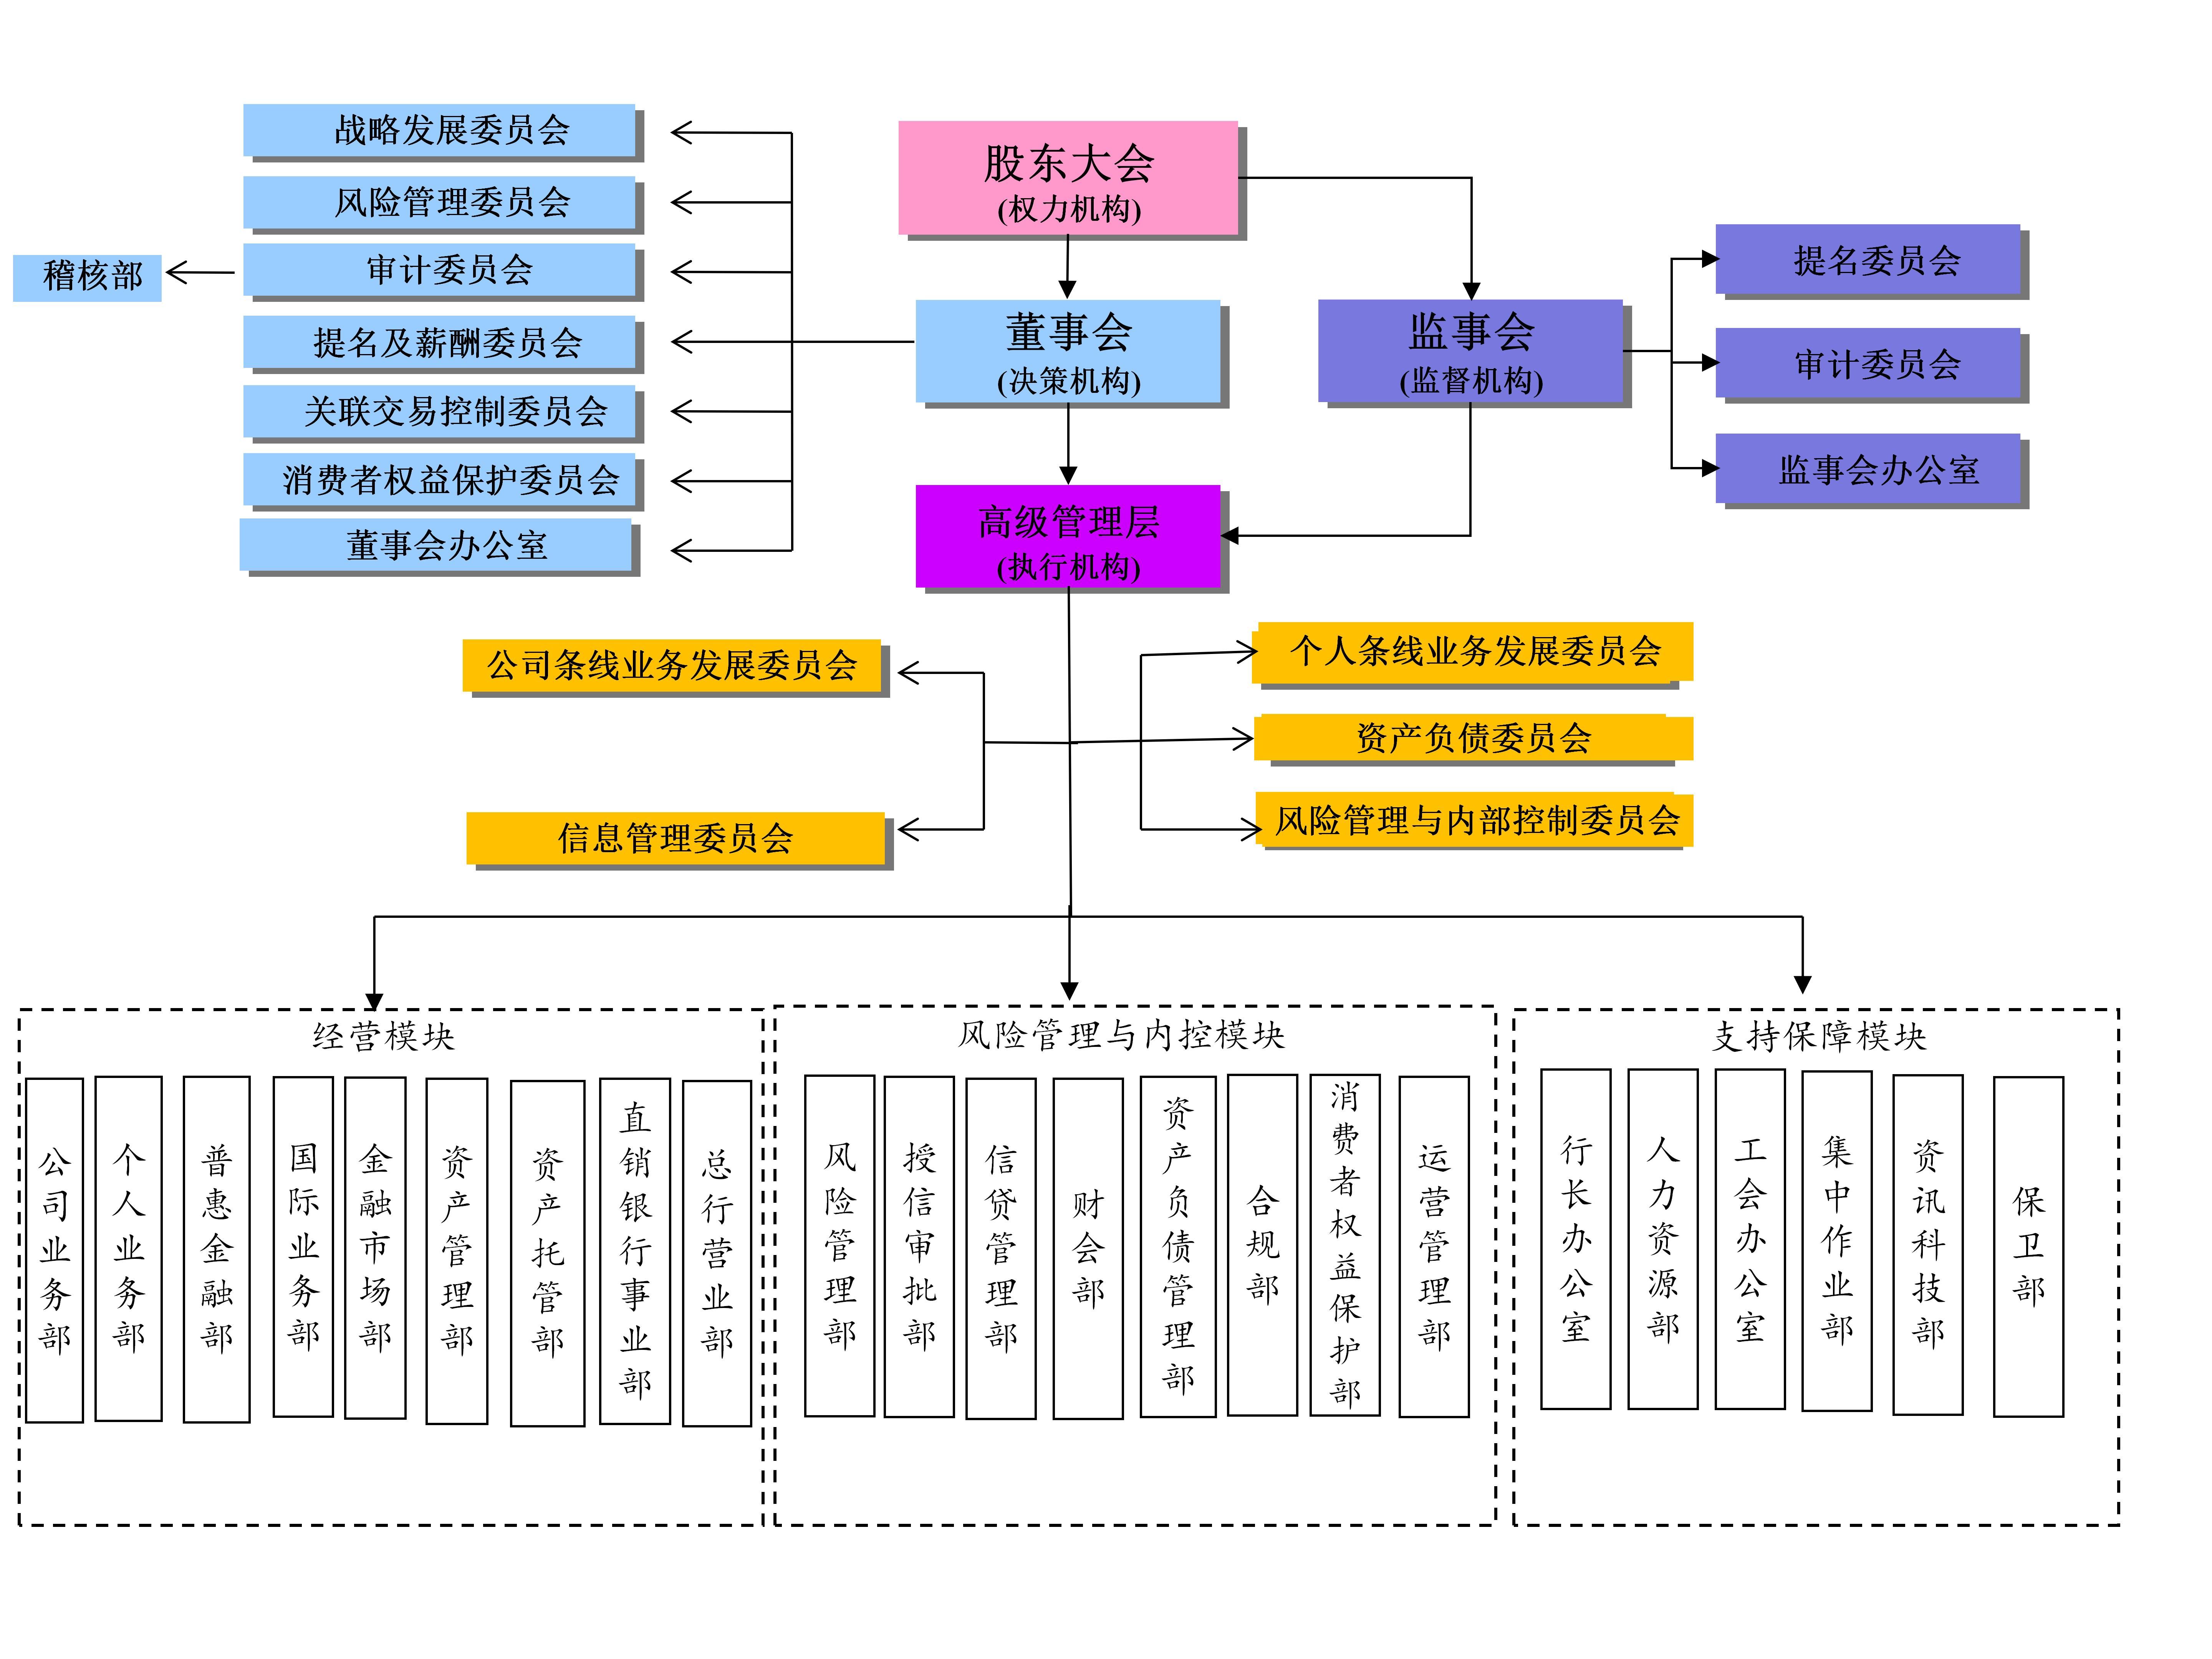 東莞銀行組織架構圖（2022年9月更新）_01